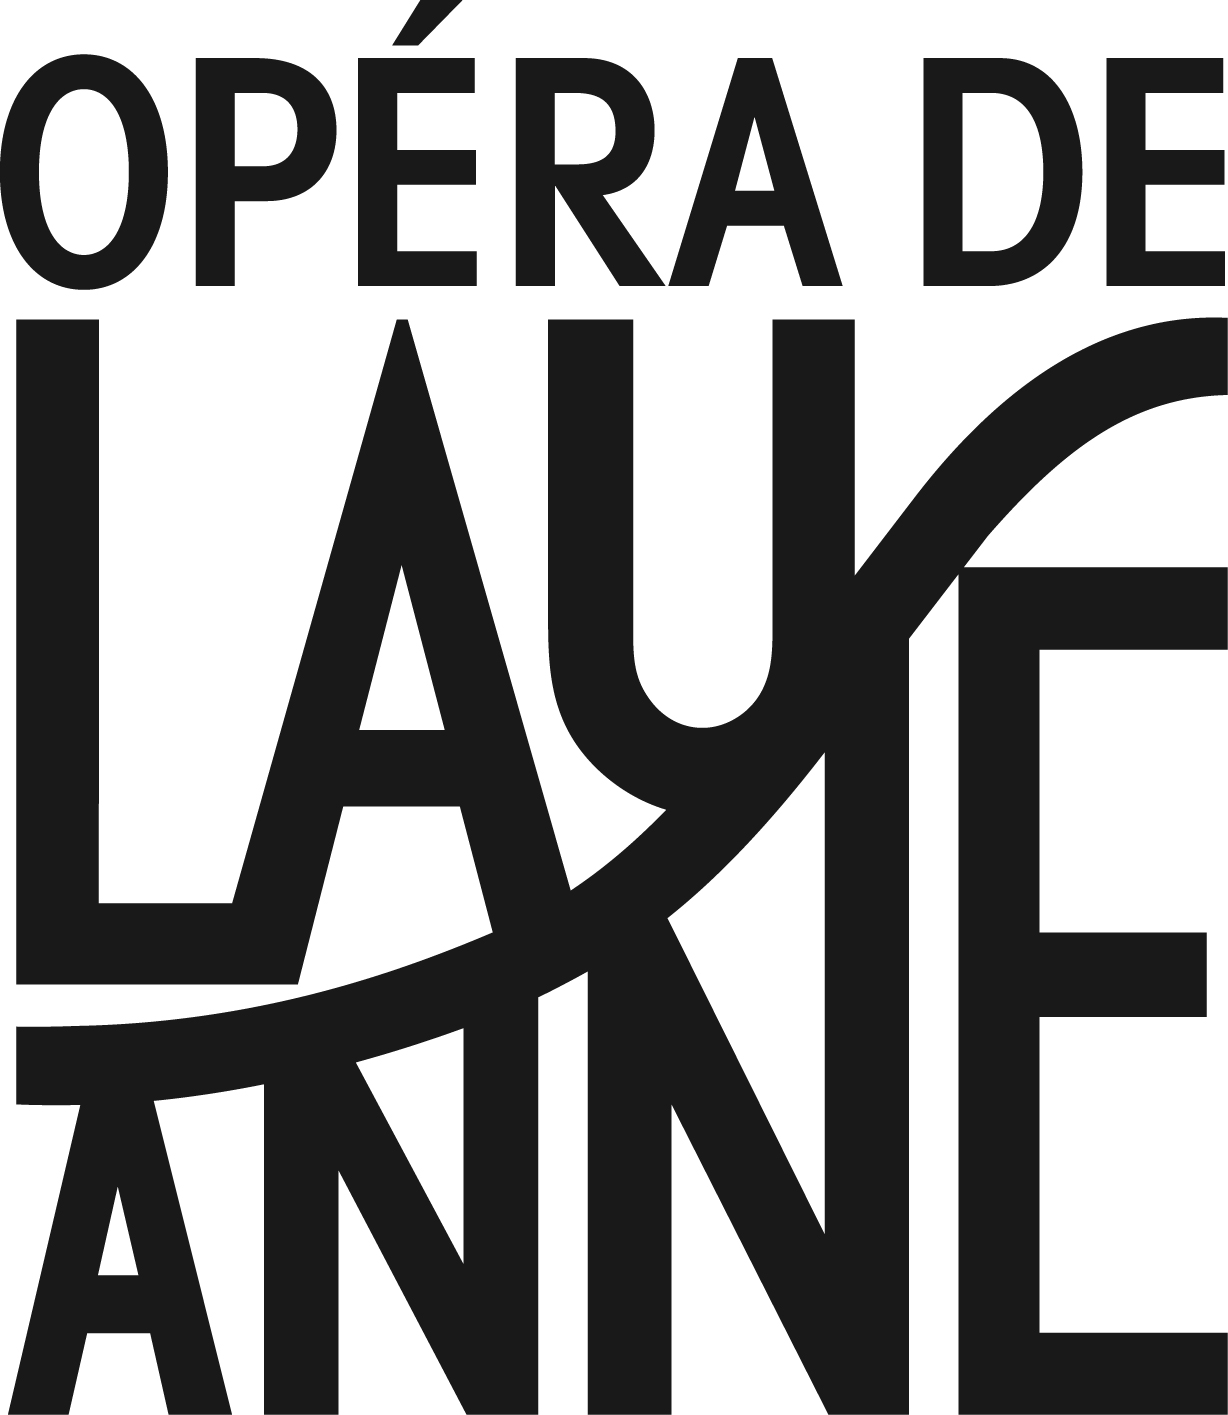 Opéra de Lausanne